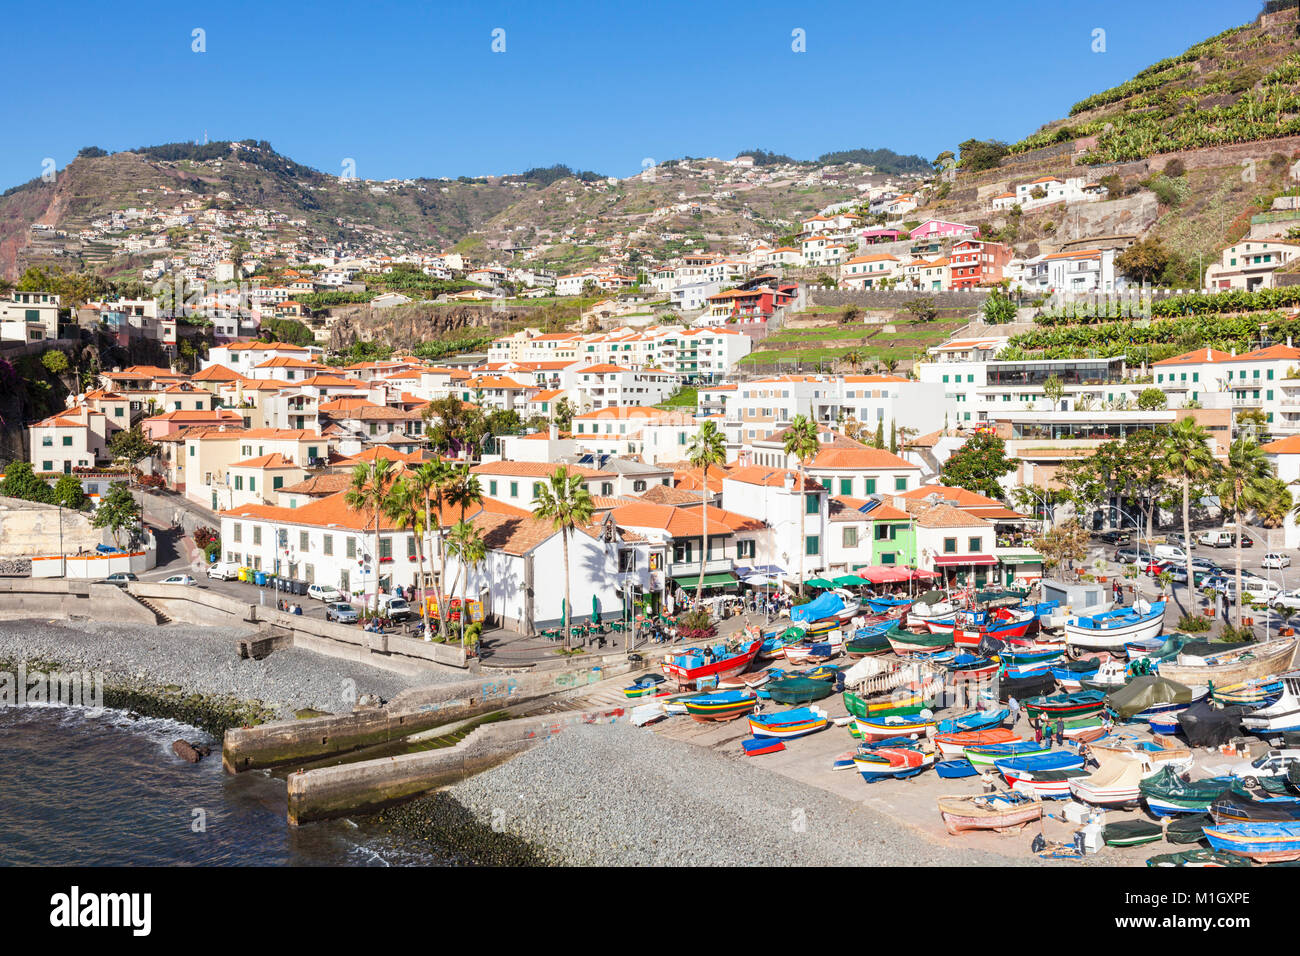 Decorazioni tradizionali barche da pesca Camara de Lobos porto Madeira Portogallo UE Europa Foto Stock